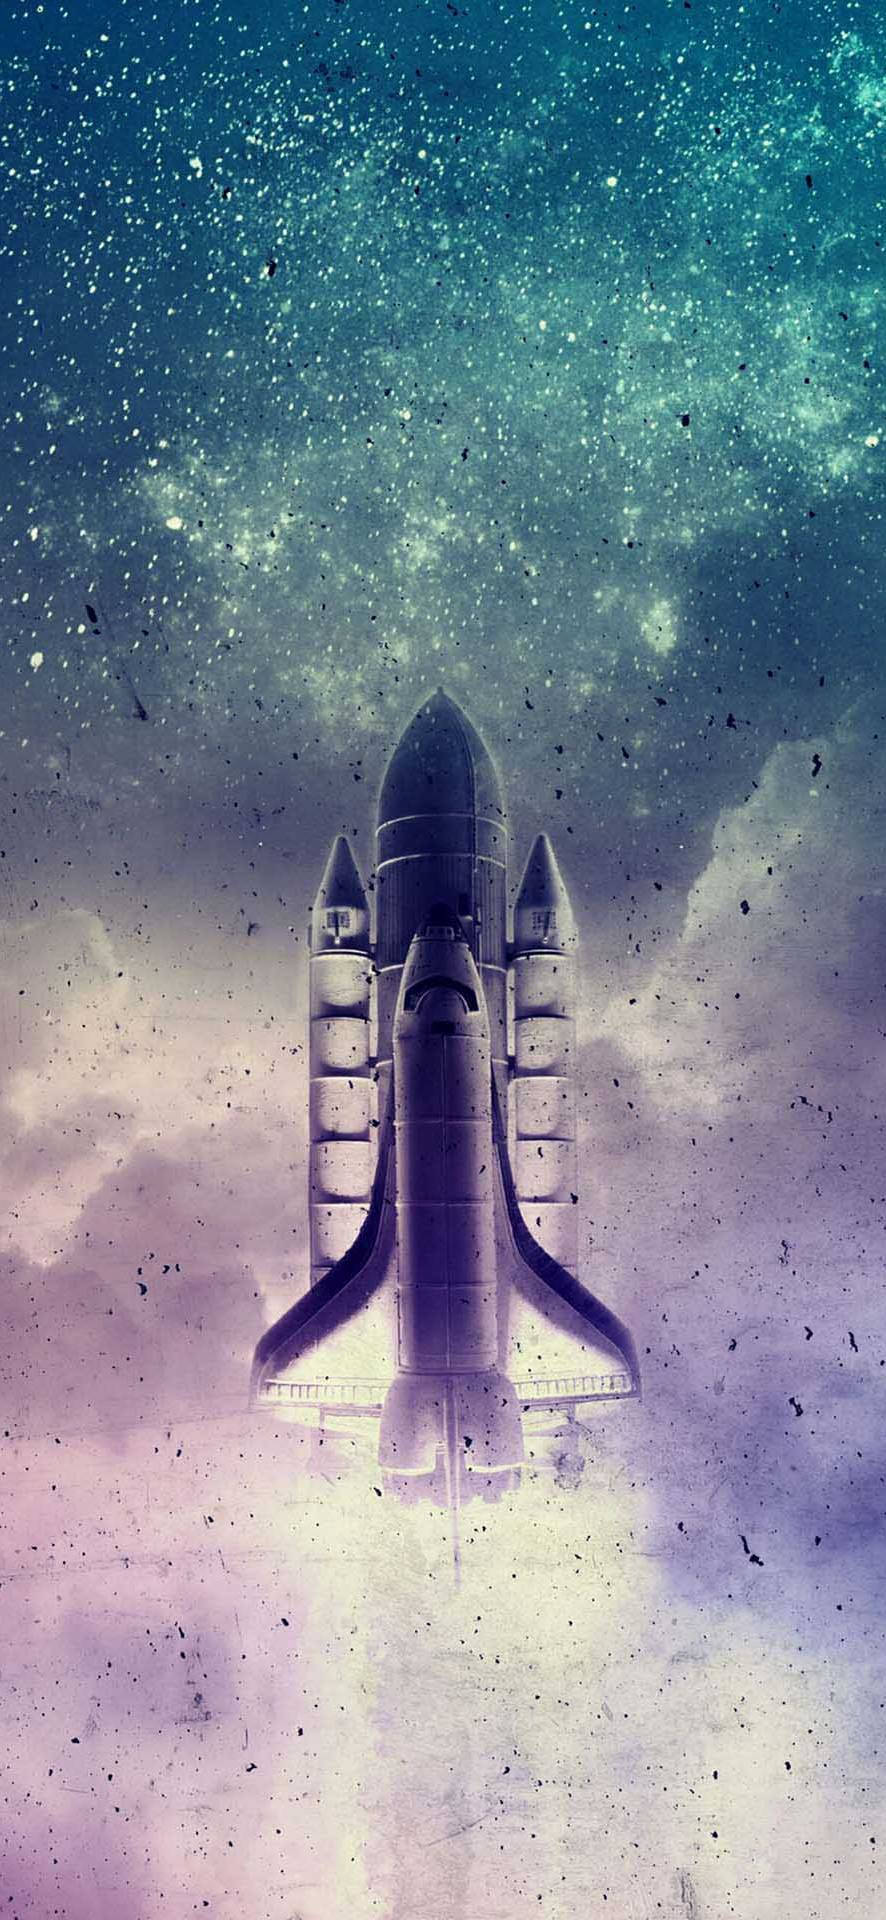 Aesthetic Rocket Launching Background